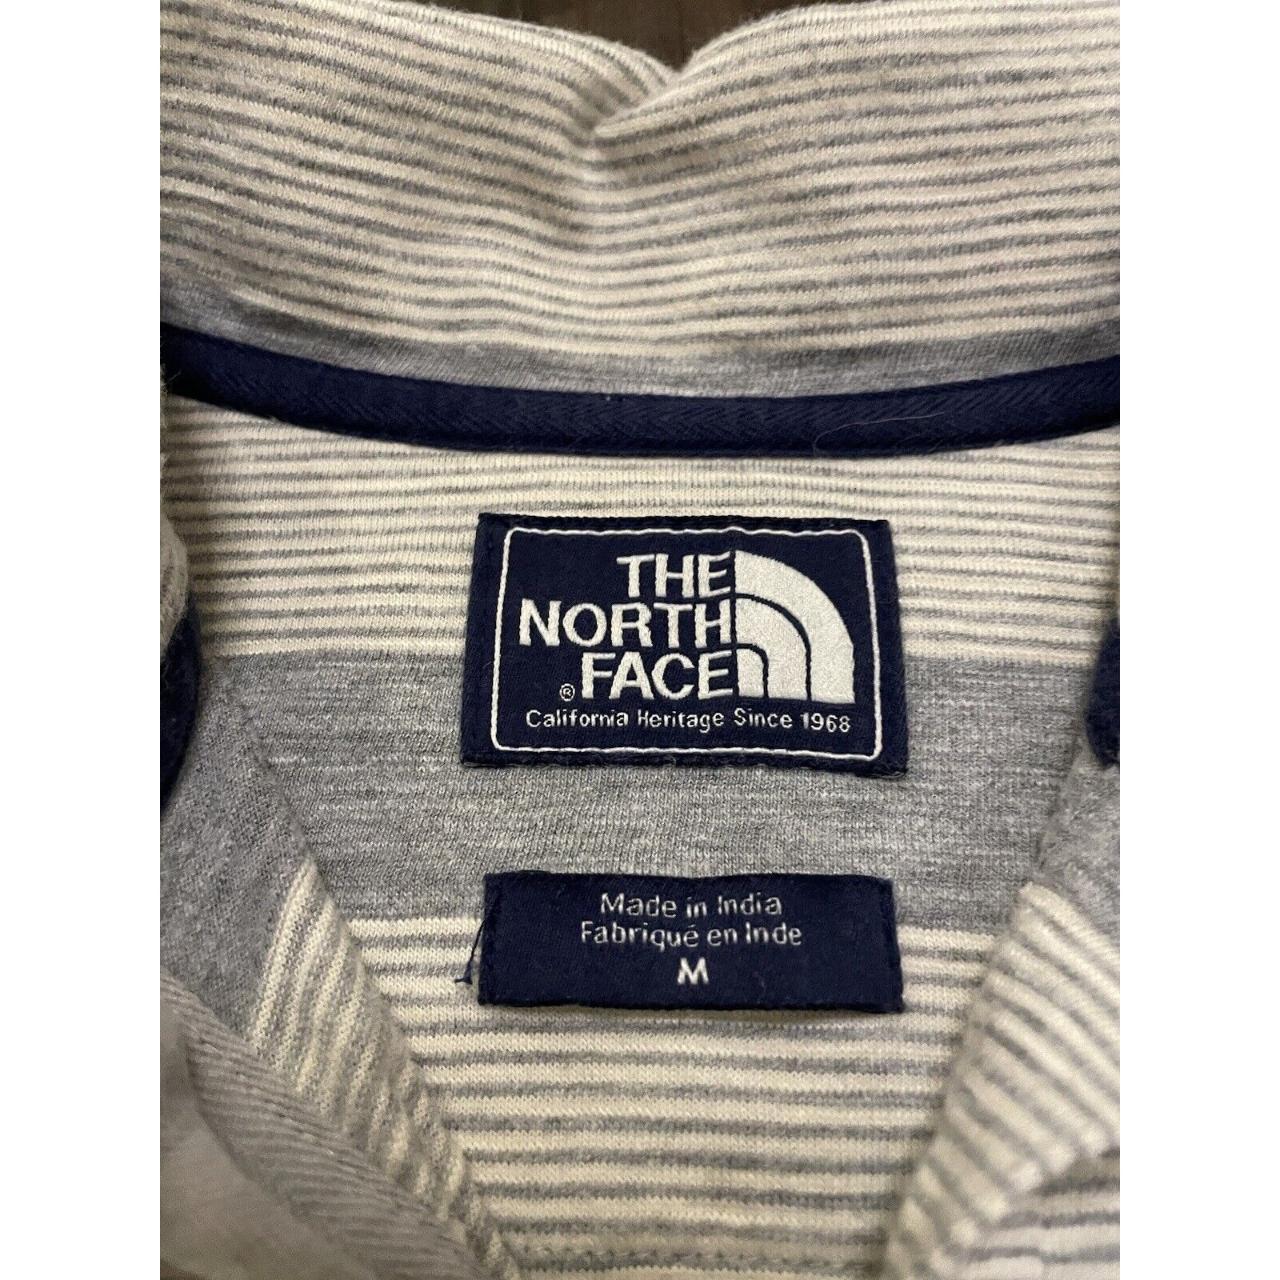 The North Face Shirt Men’s Medium Gray Striped Short... - Depop